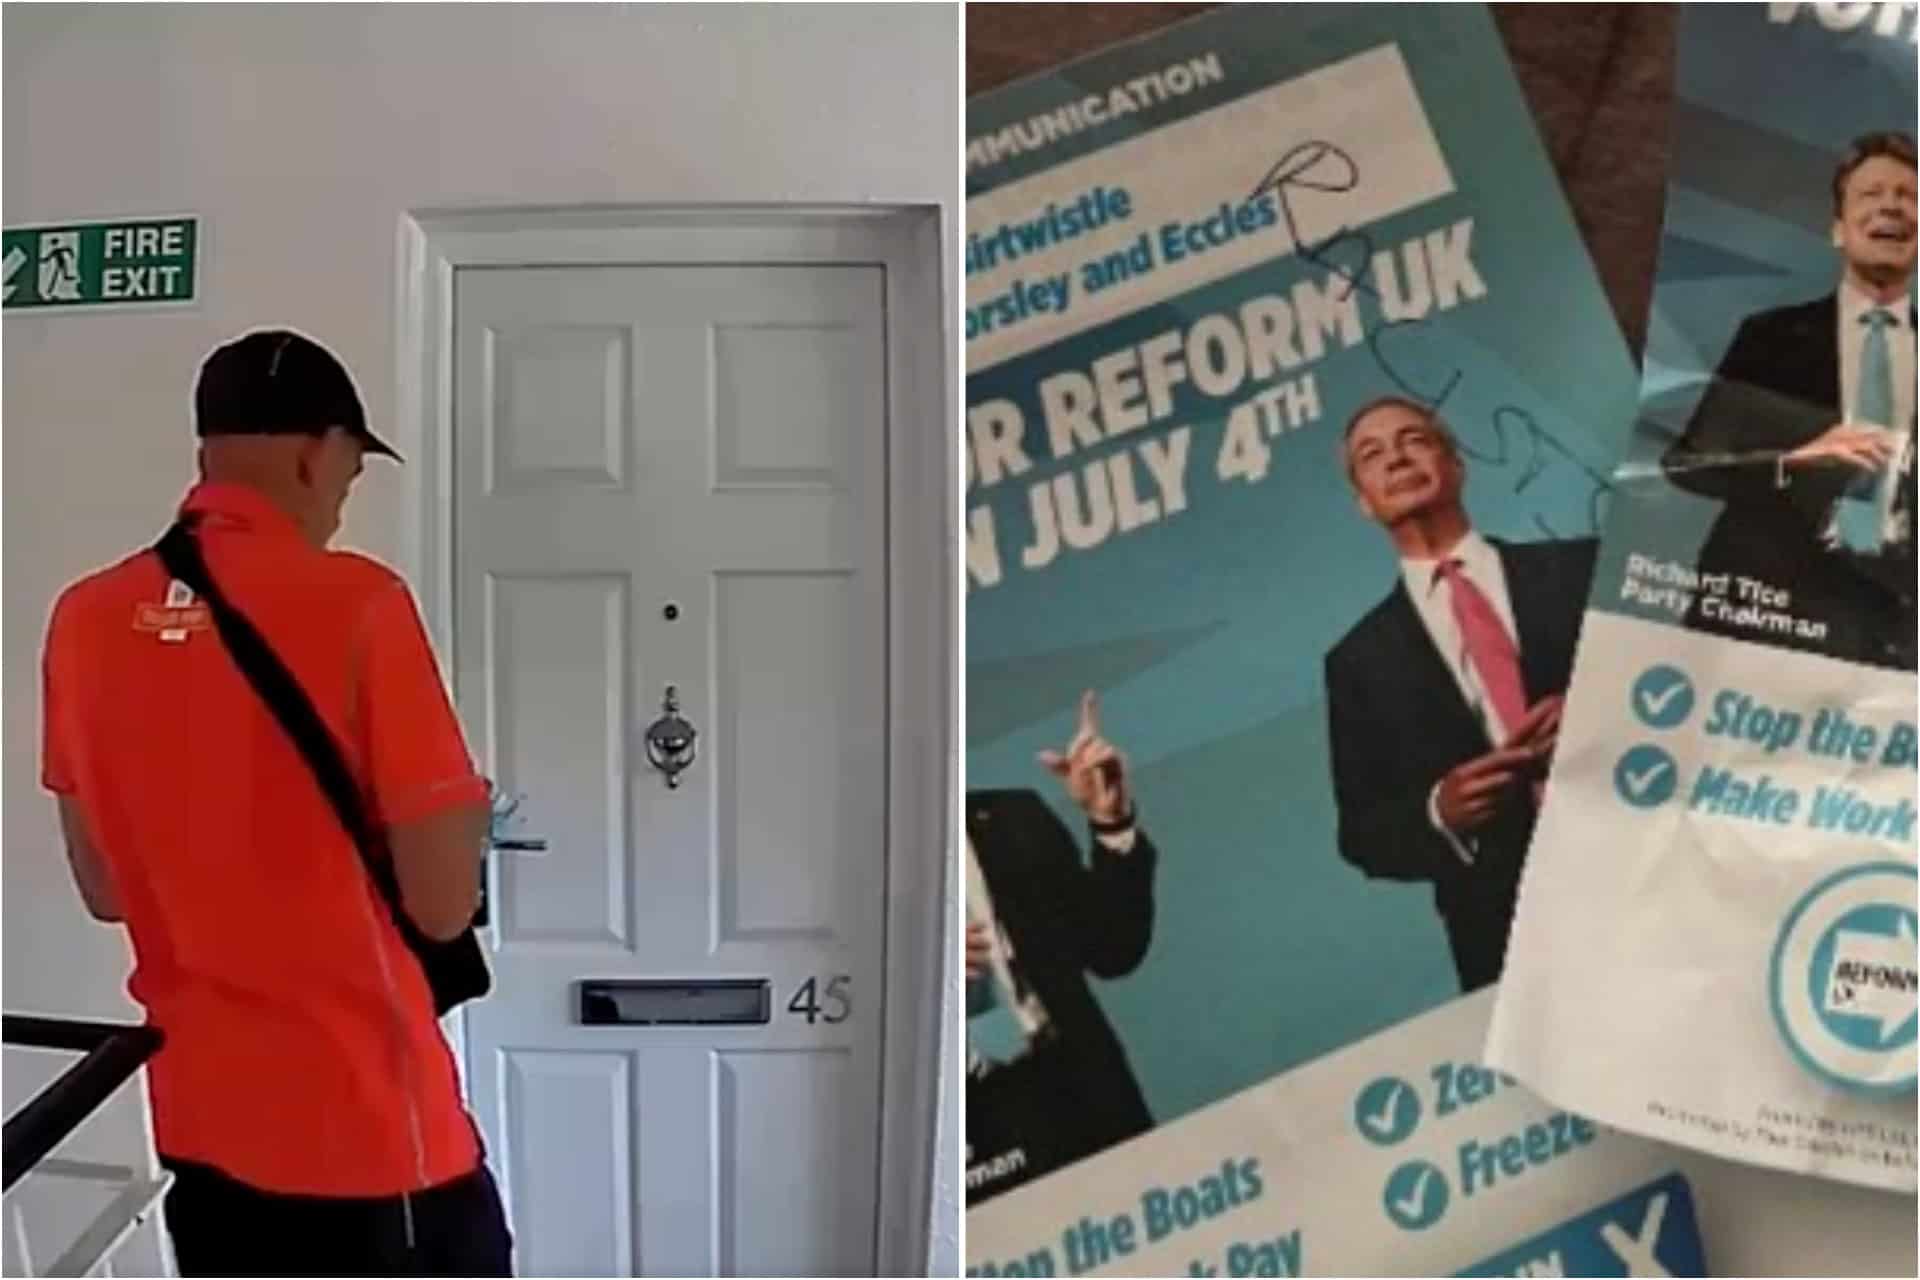 Royal Mail postman filmed writing ‘racists’ on Reform UK leaflets